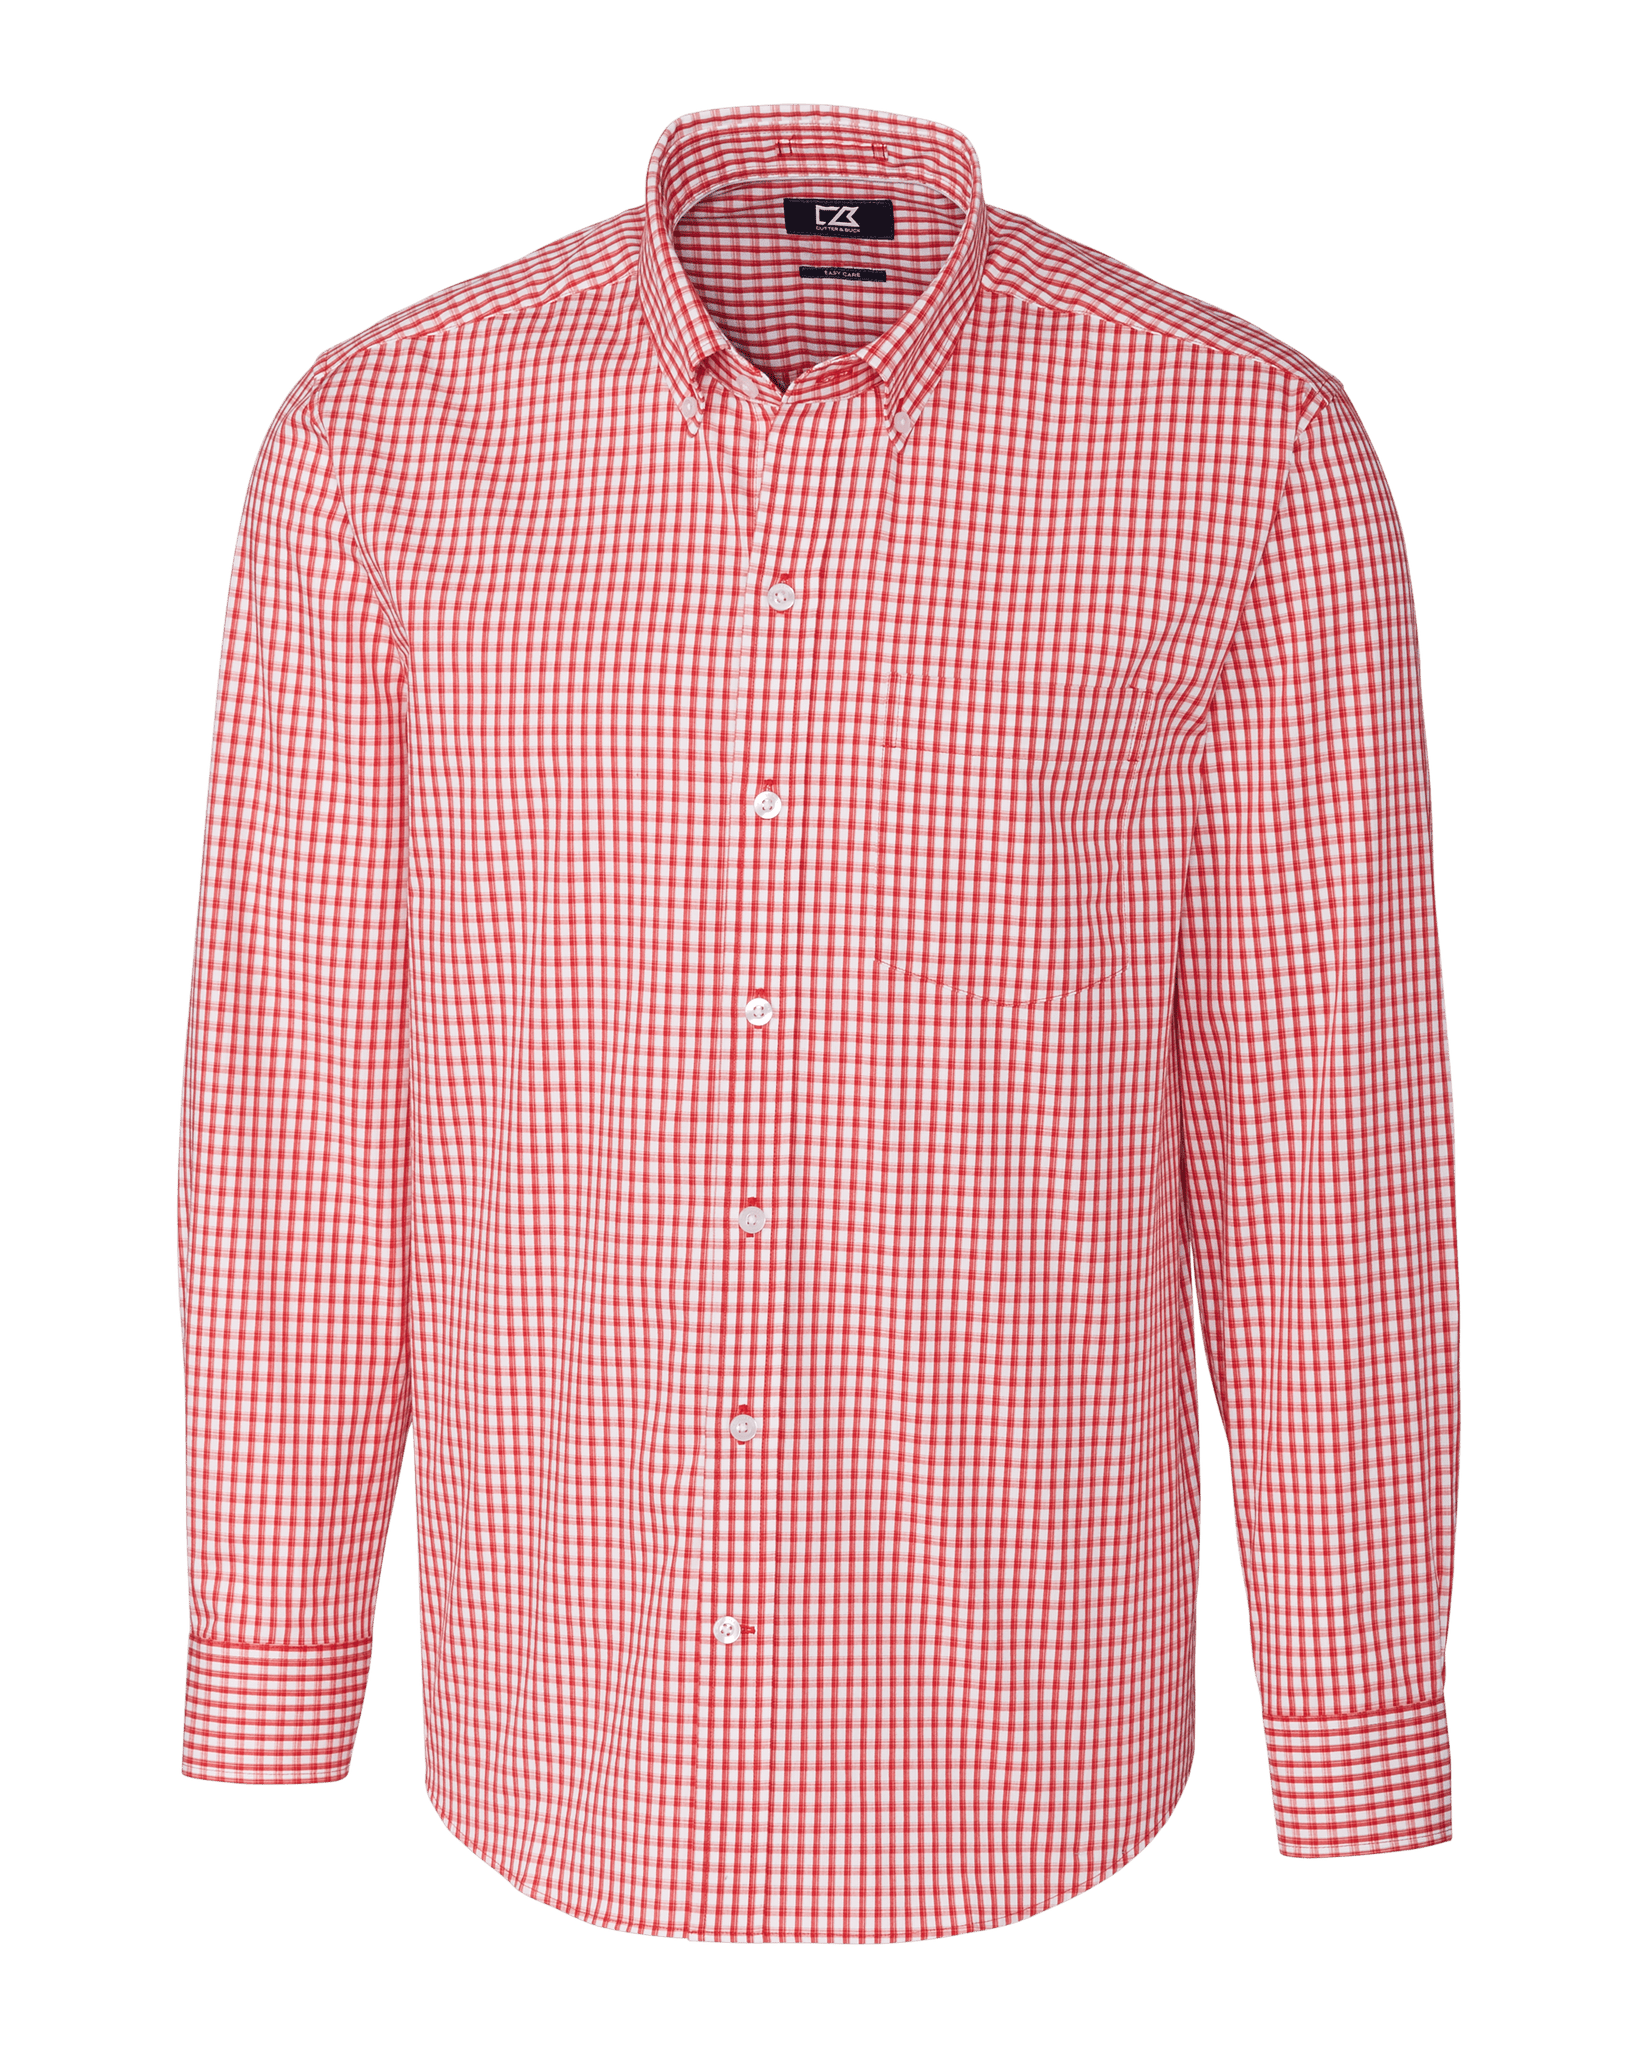 Cutter & Buck Woven Shirts S / Cardinal Red Cutter & Buck - Men's L/S Stretch Gingham